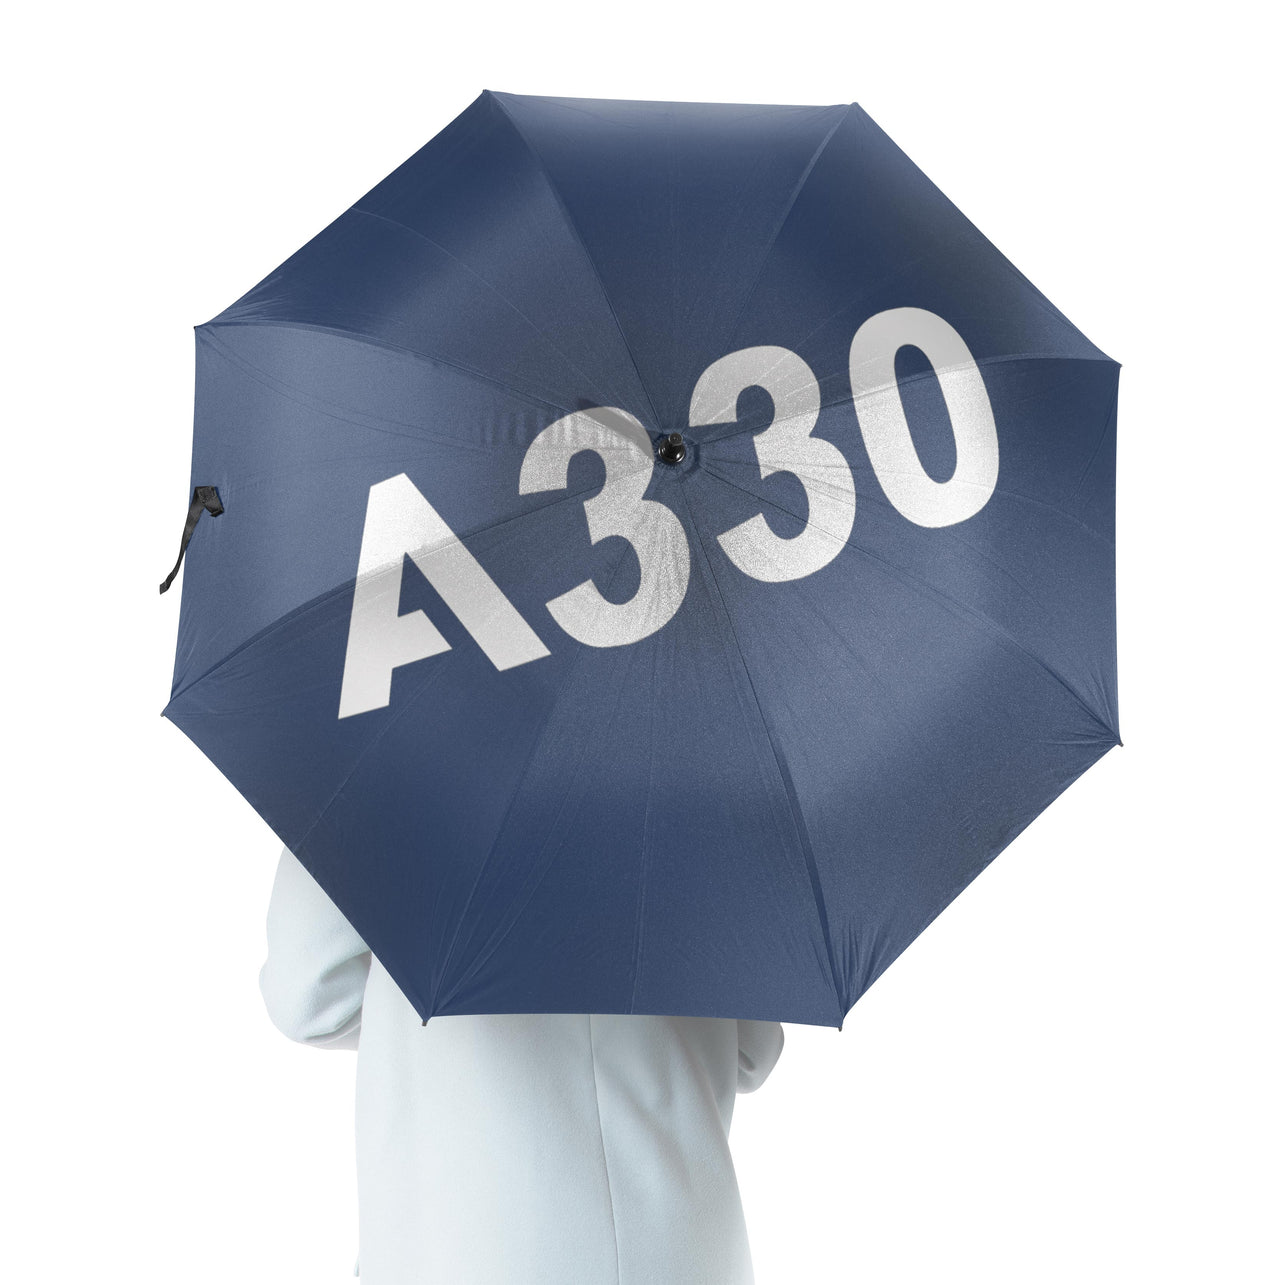 A330 Flat Text Designed Umbrella